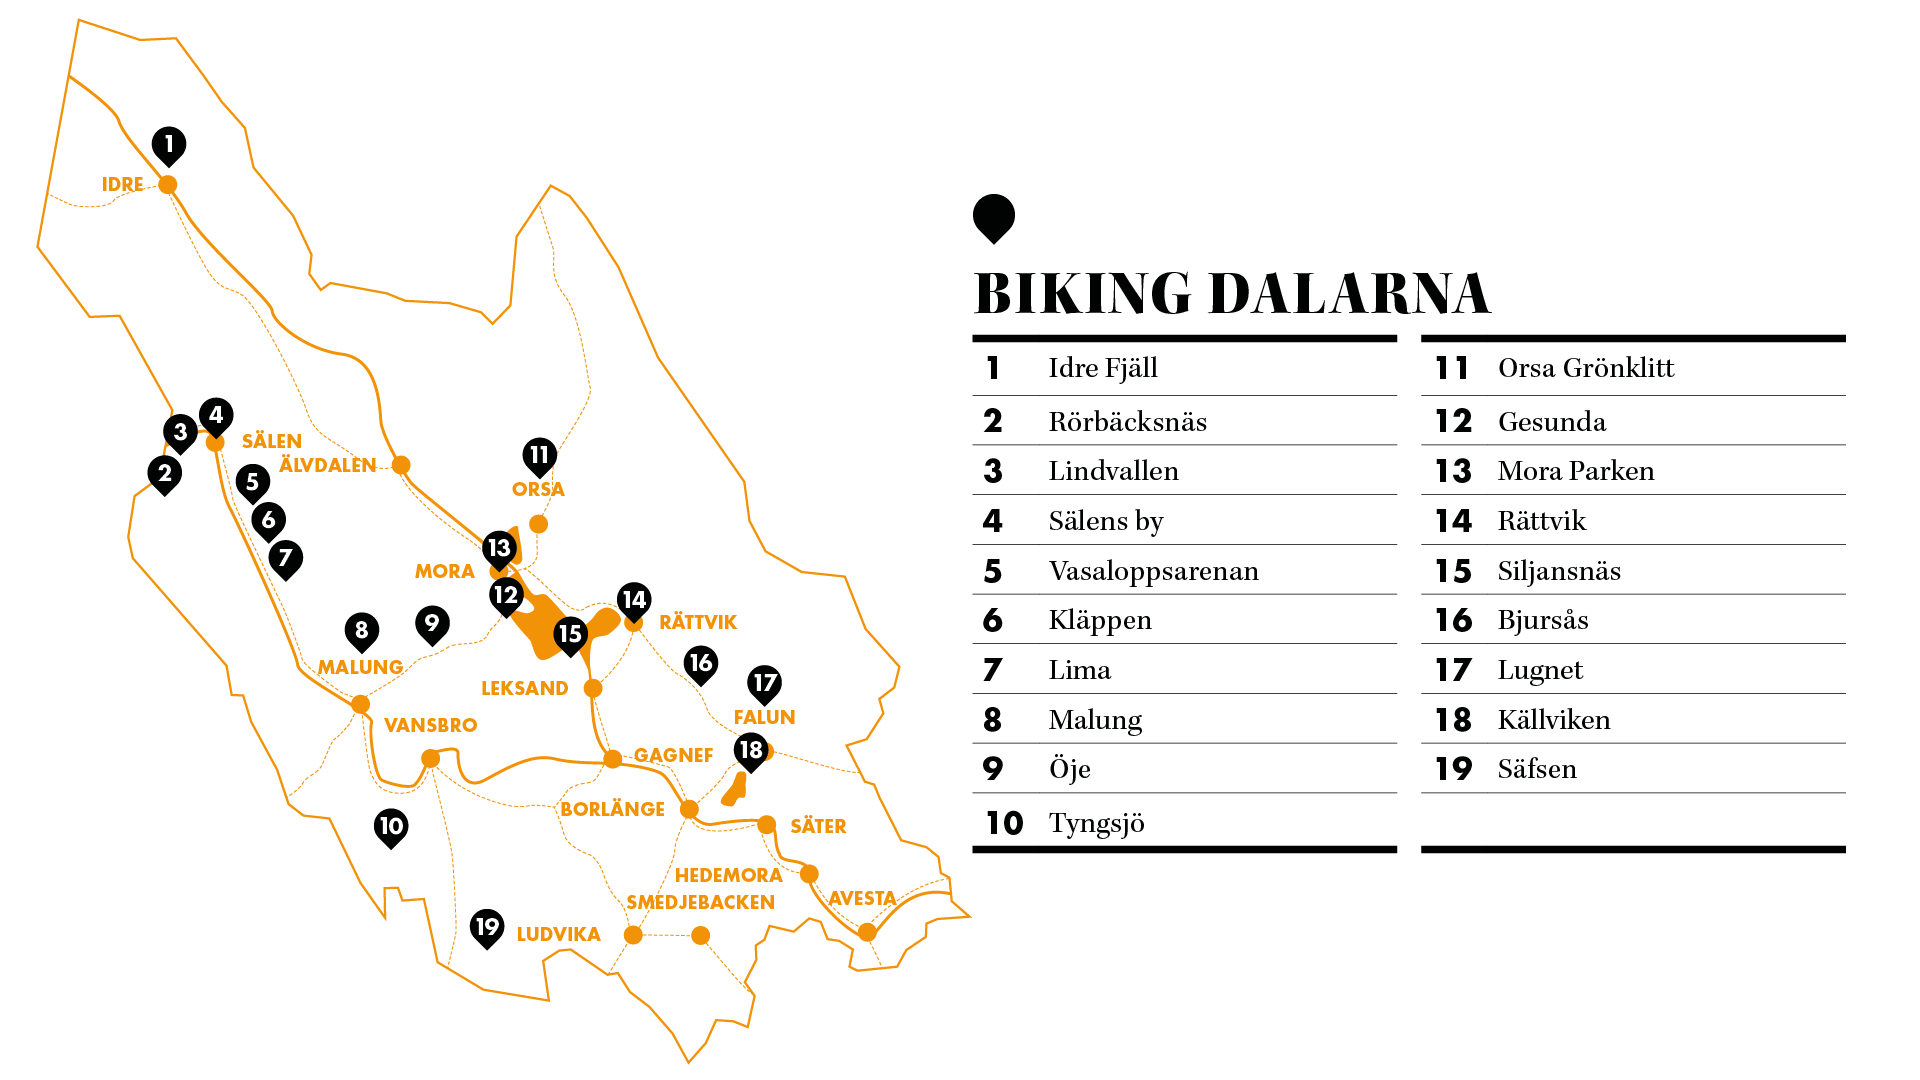 Lima Sverige Karta – Karta 2020